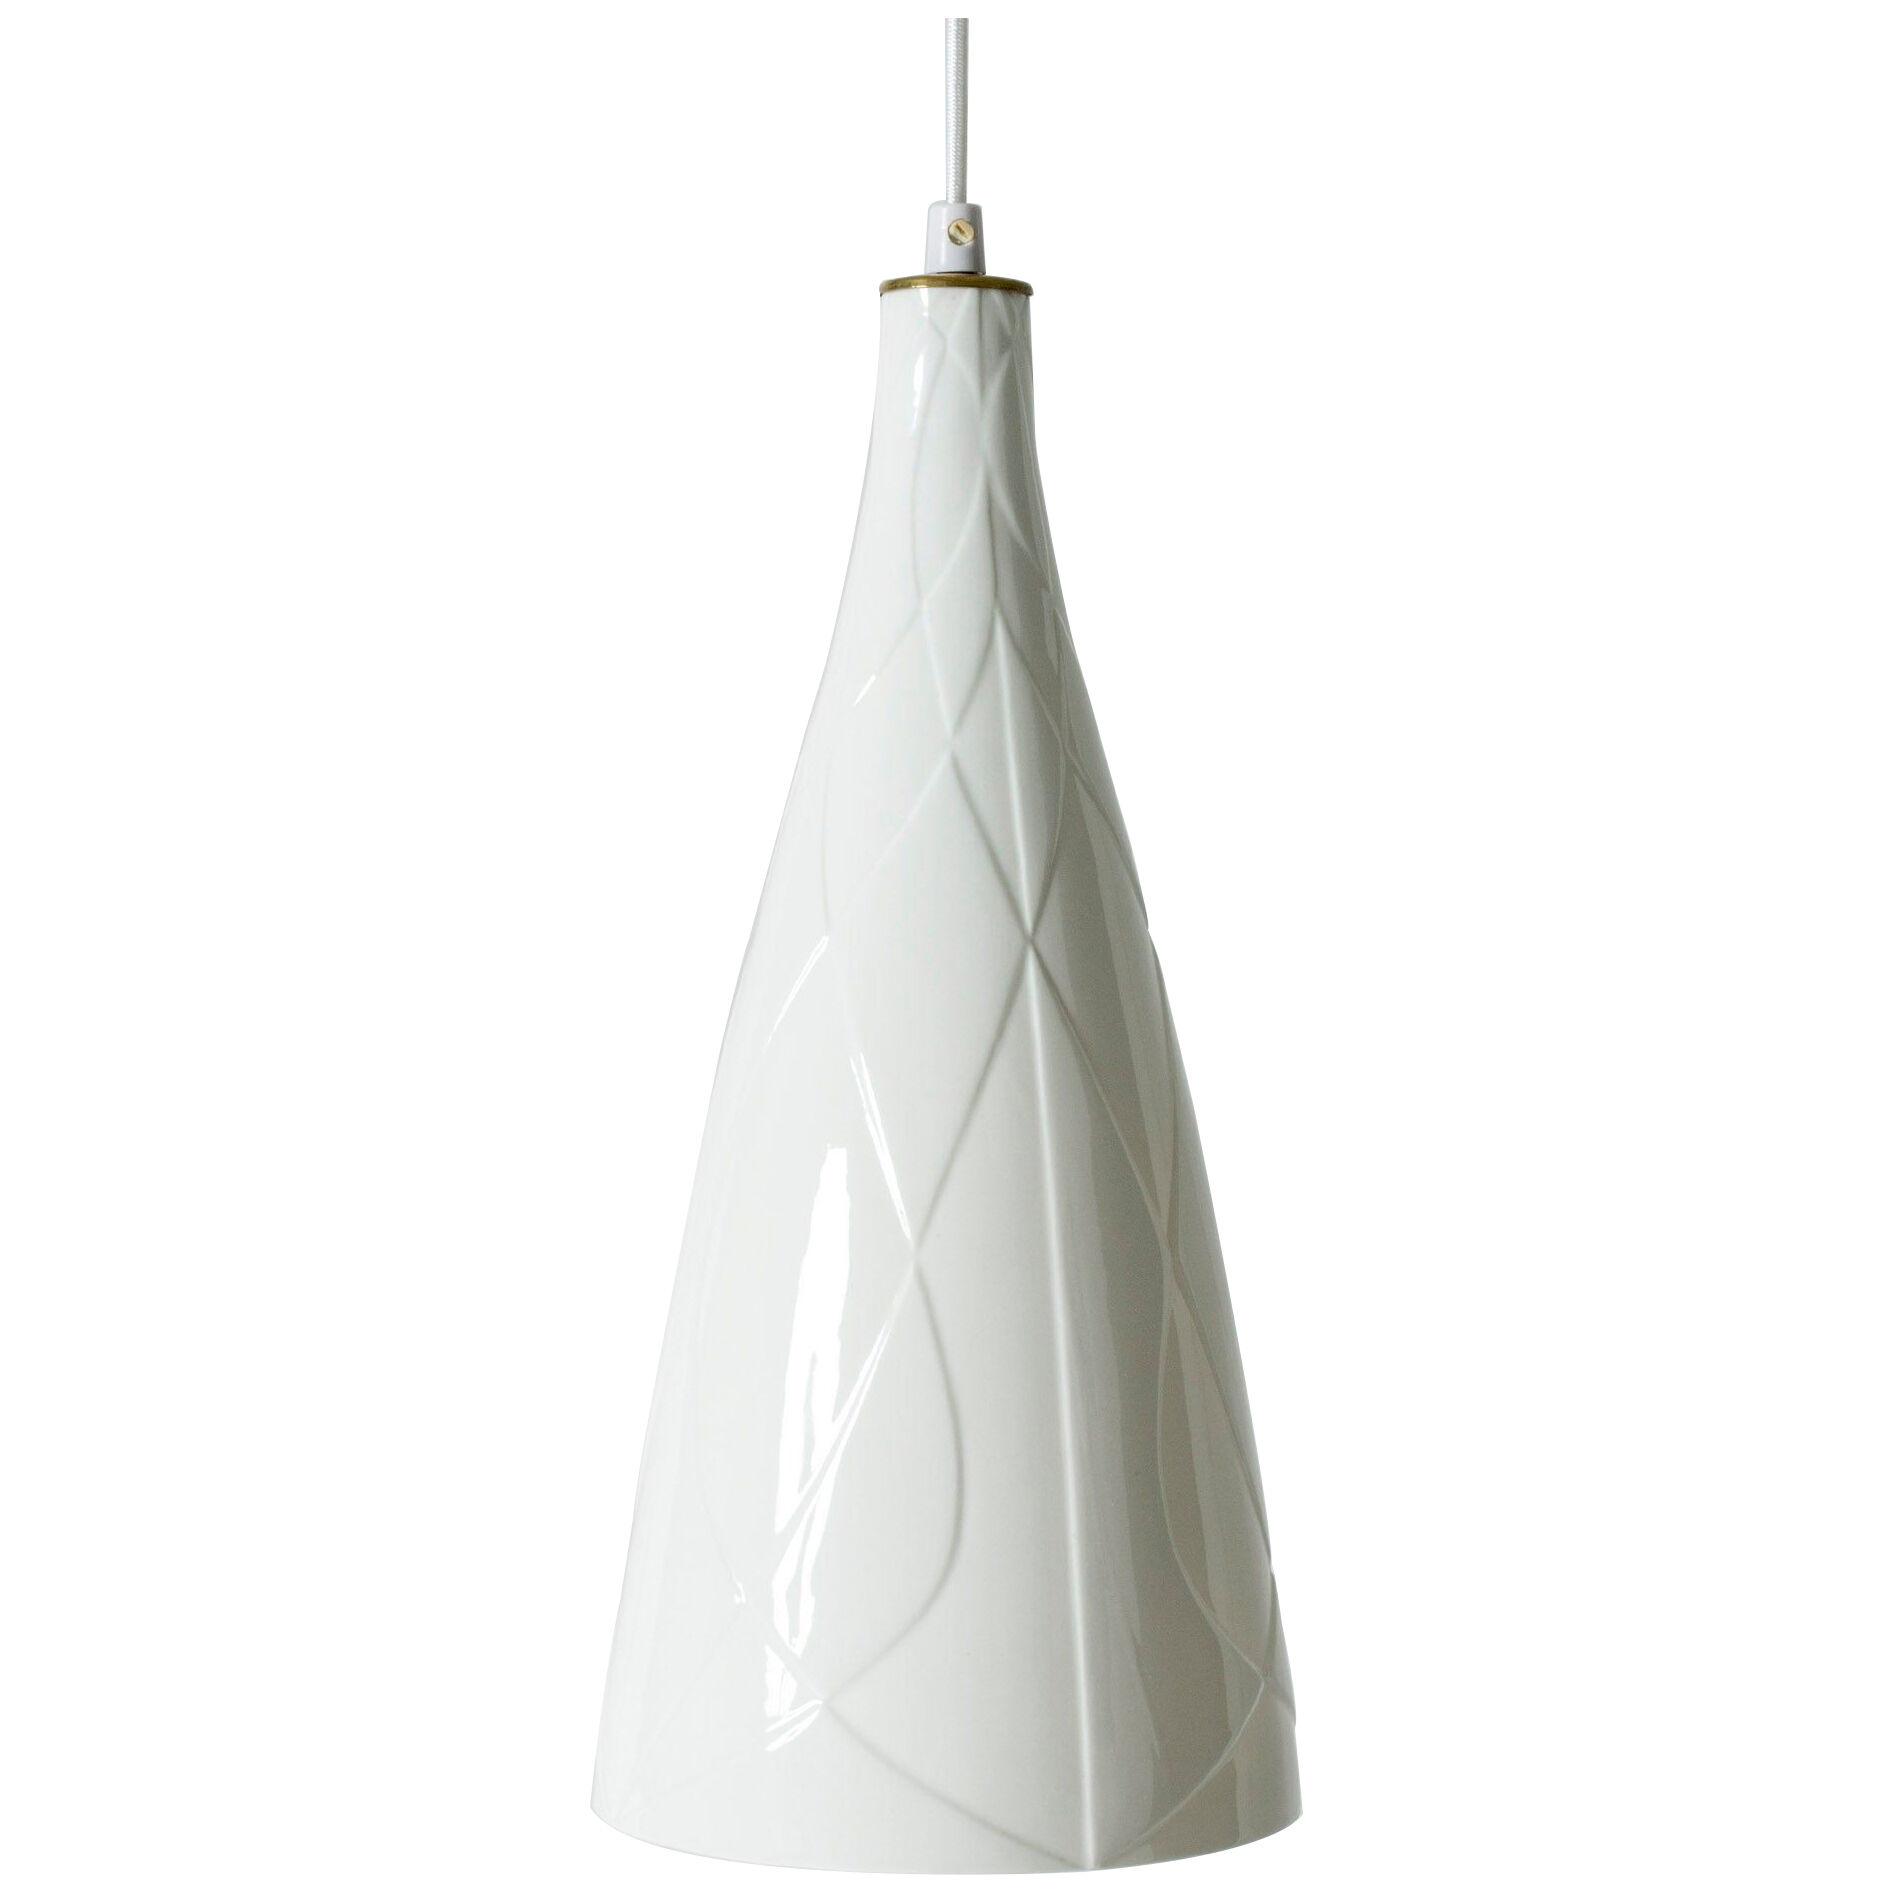 Ceramic Pendant Ceiling Lamp by Carl-Harry Stålhane for Rörstrand, Sweden, 1950s